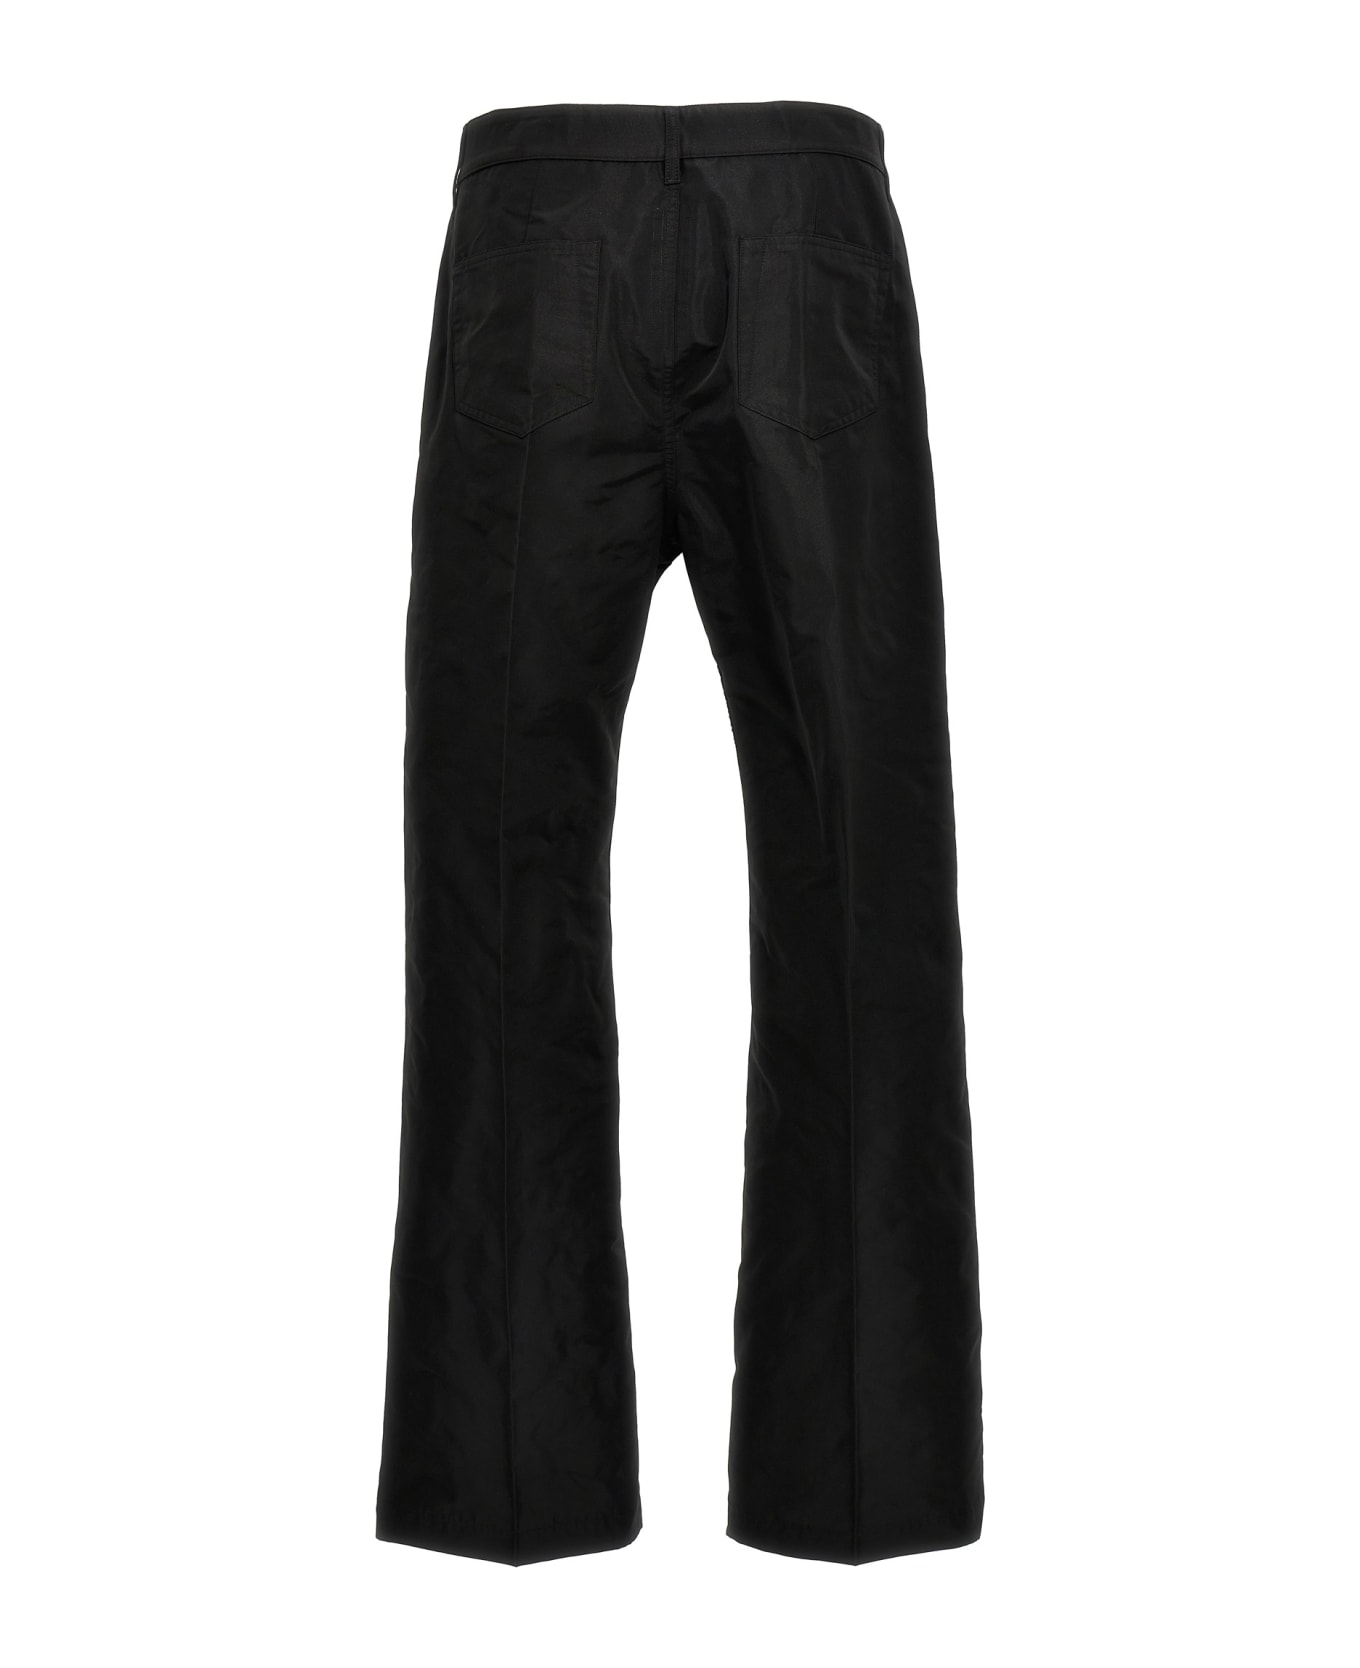 Rick Owens 'geth Jeans' Pants - Black